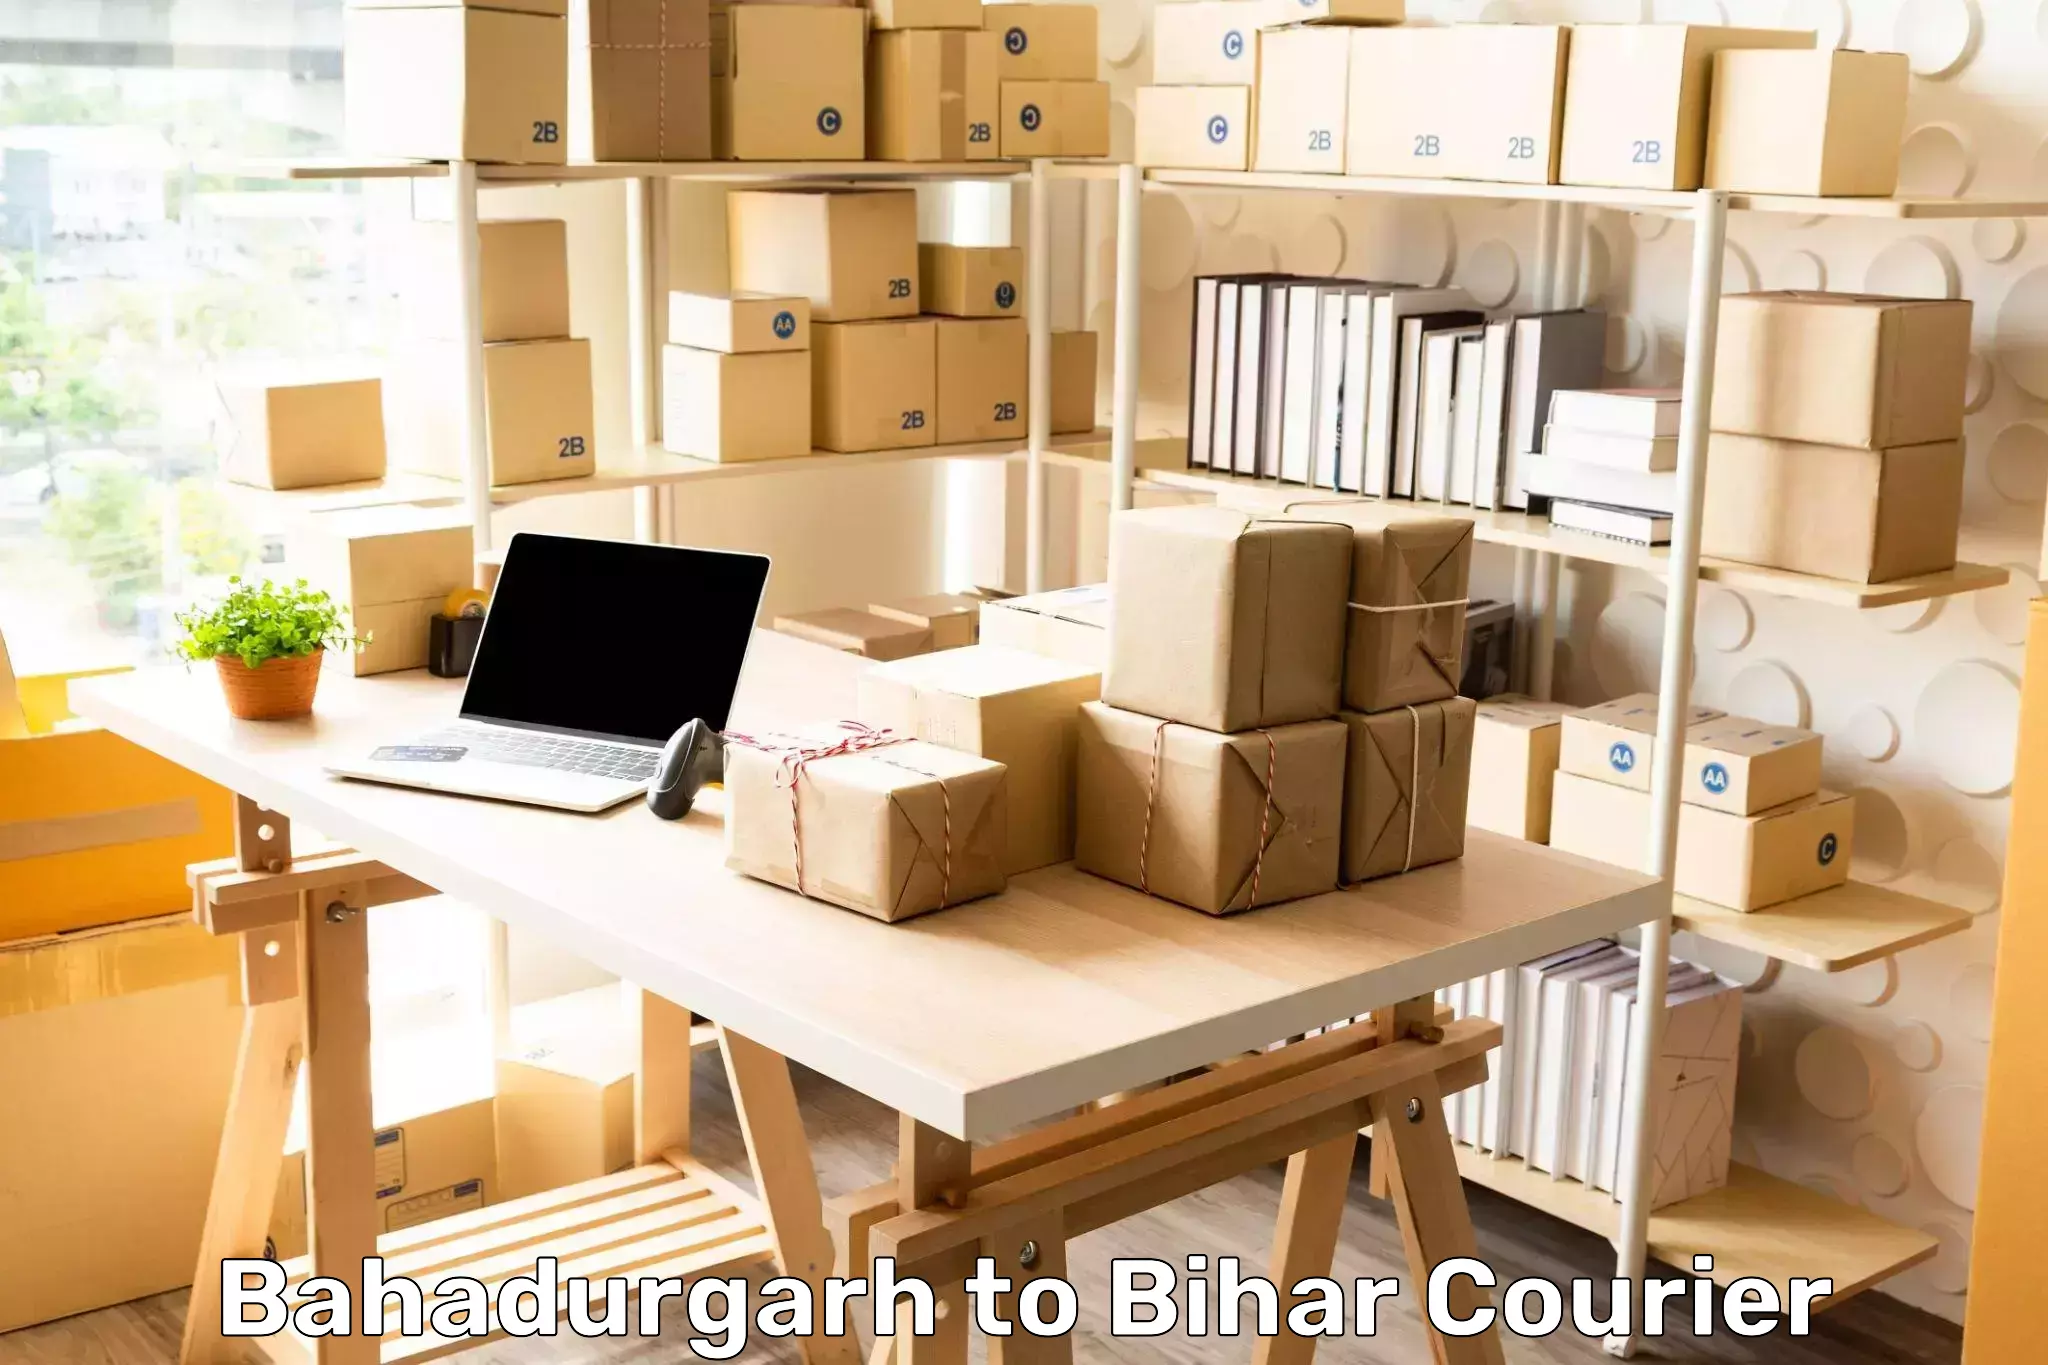 Urban courier service Bahadurgarh to Bihar